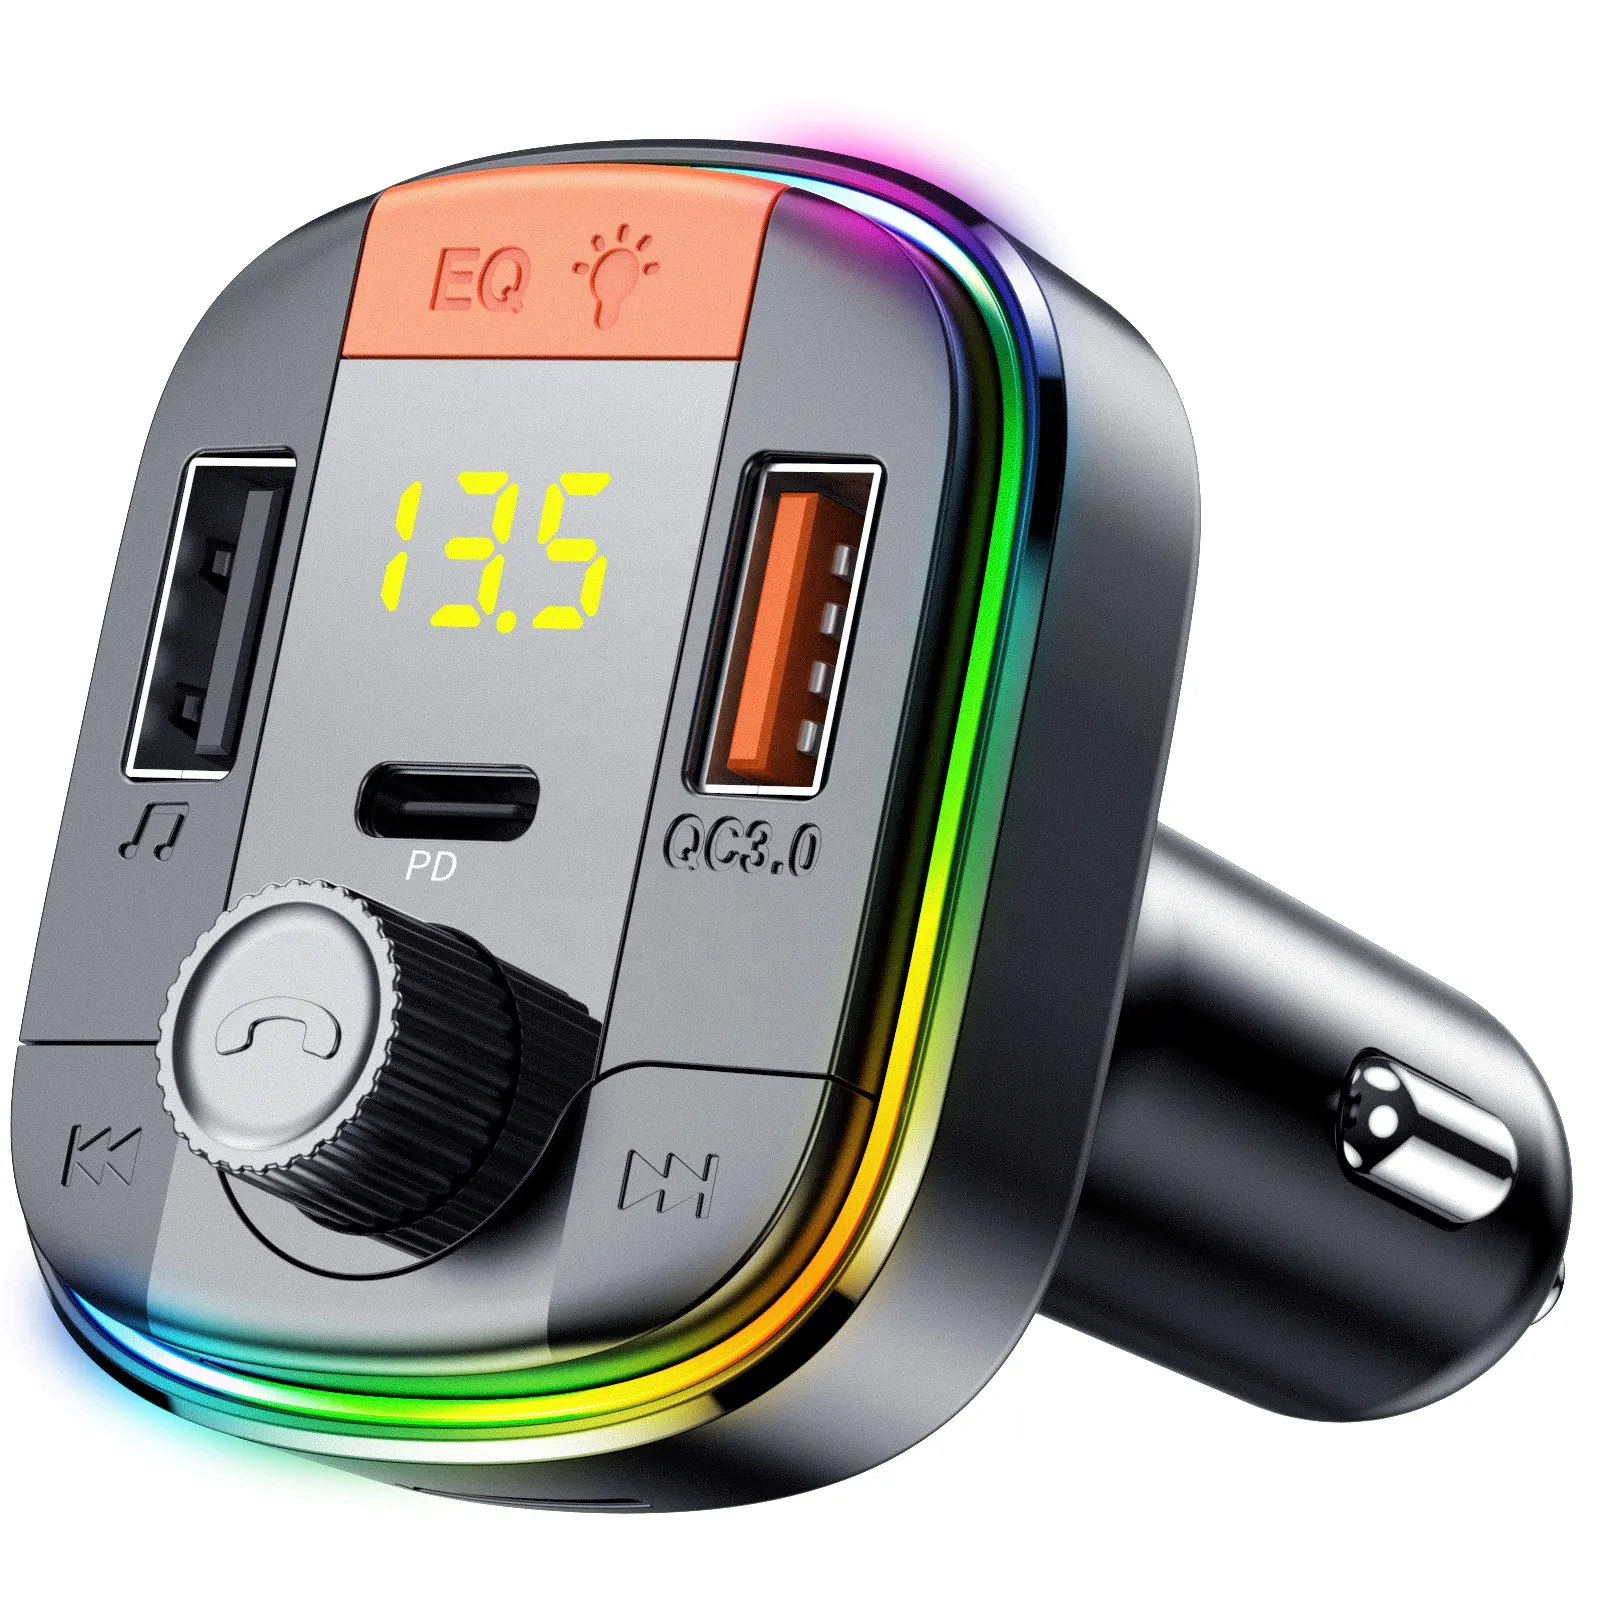 Kablosuz radyo QC3.0 hızlı şarj LED aydınlatmalı araç kiti araba Fm verici Bluetooth alıcısı araç multimedya Mp3 çalar